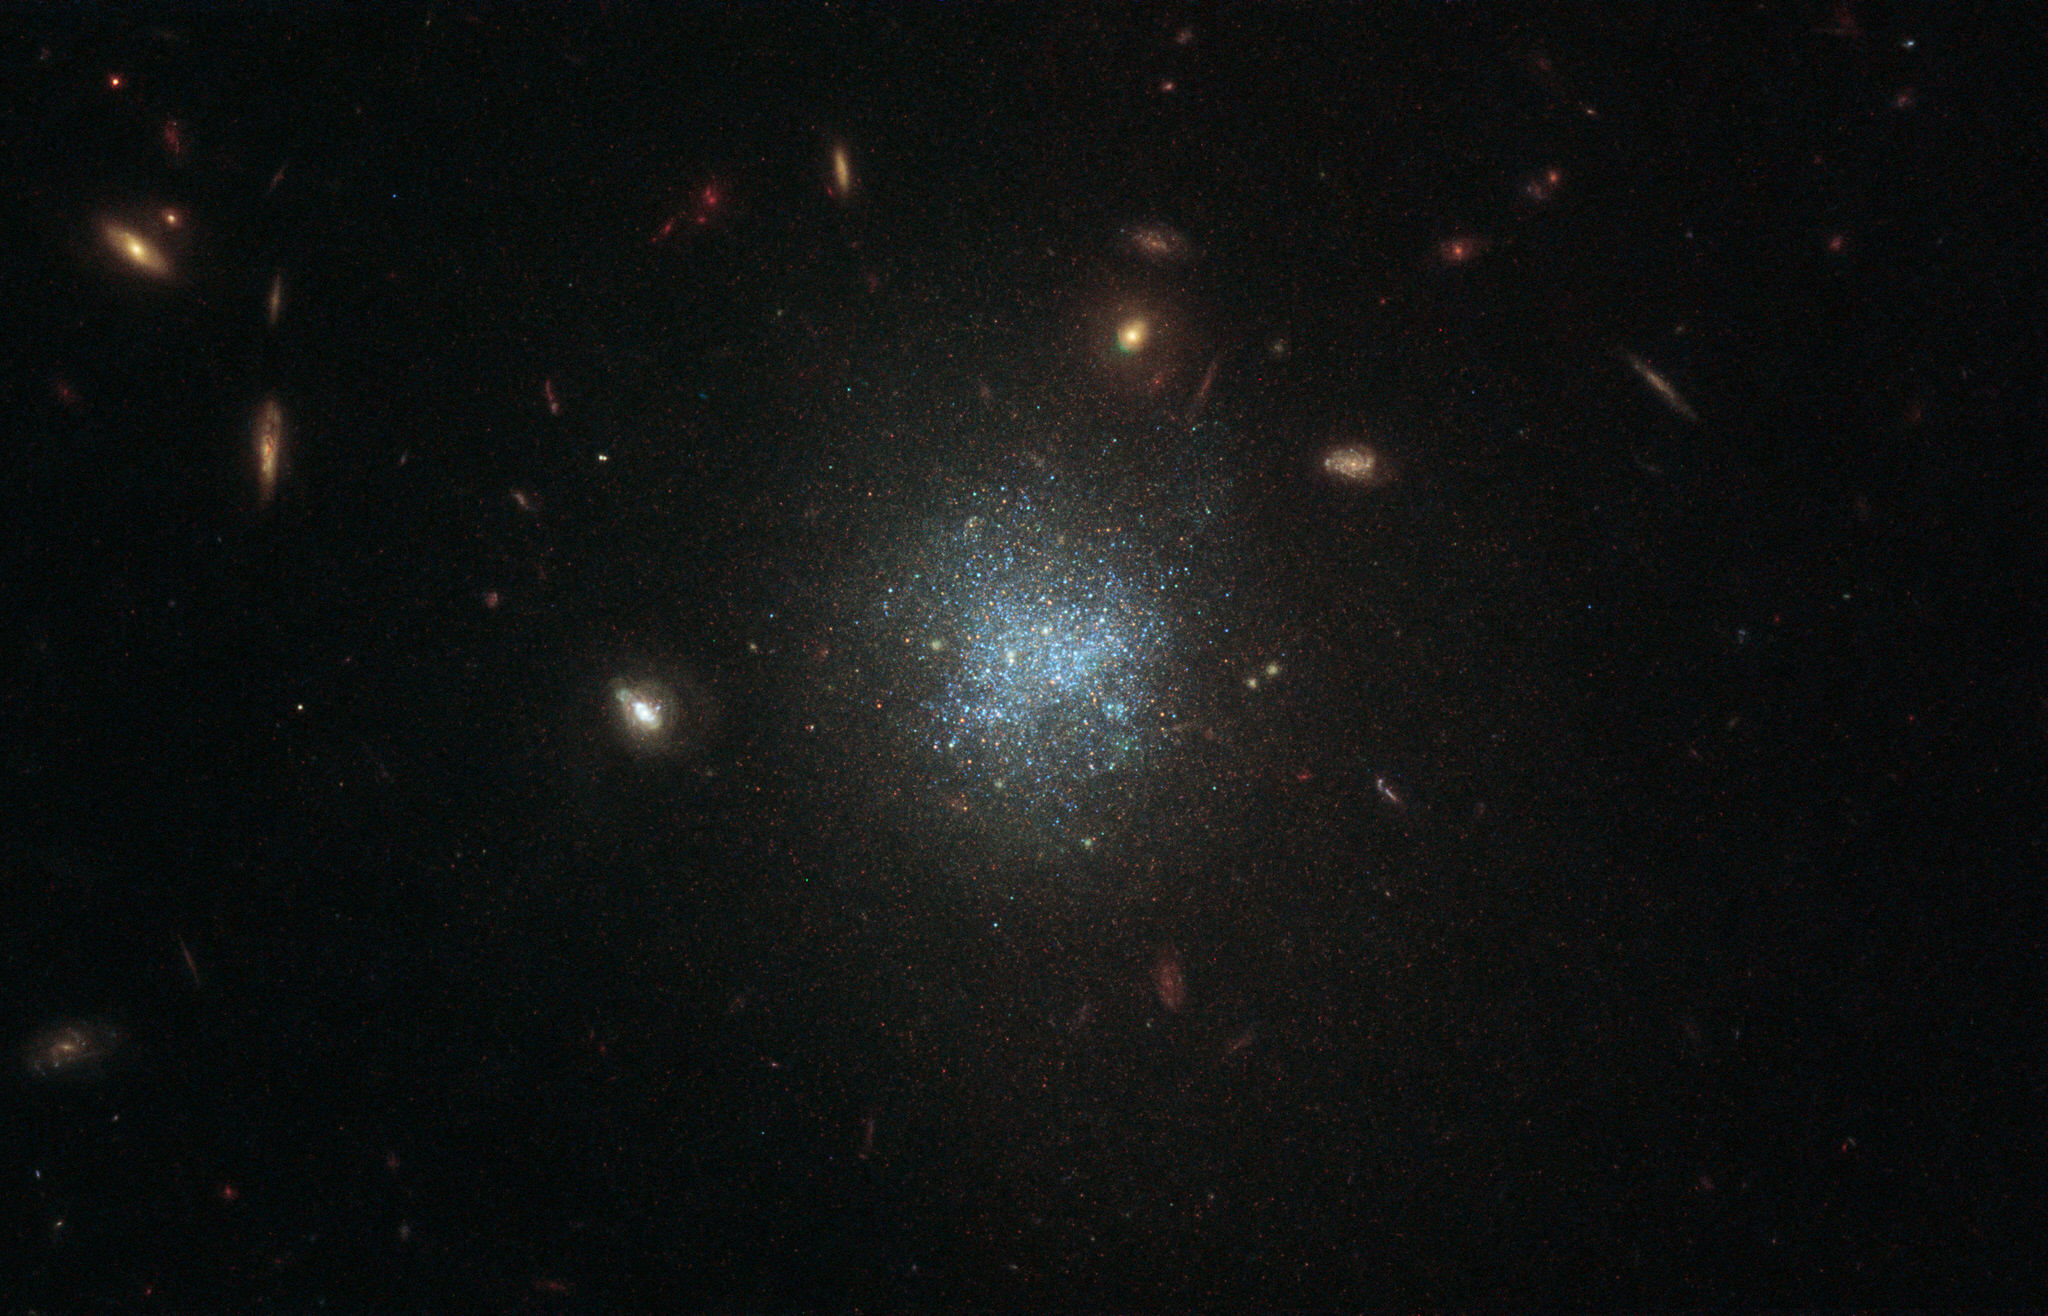 Kính thiên văn Hubble chụp được ảnh một thiên hà mờ nhạt cách 30 triệu năm ánh sáng bên trong trong chòm sao Cetus